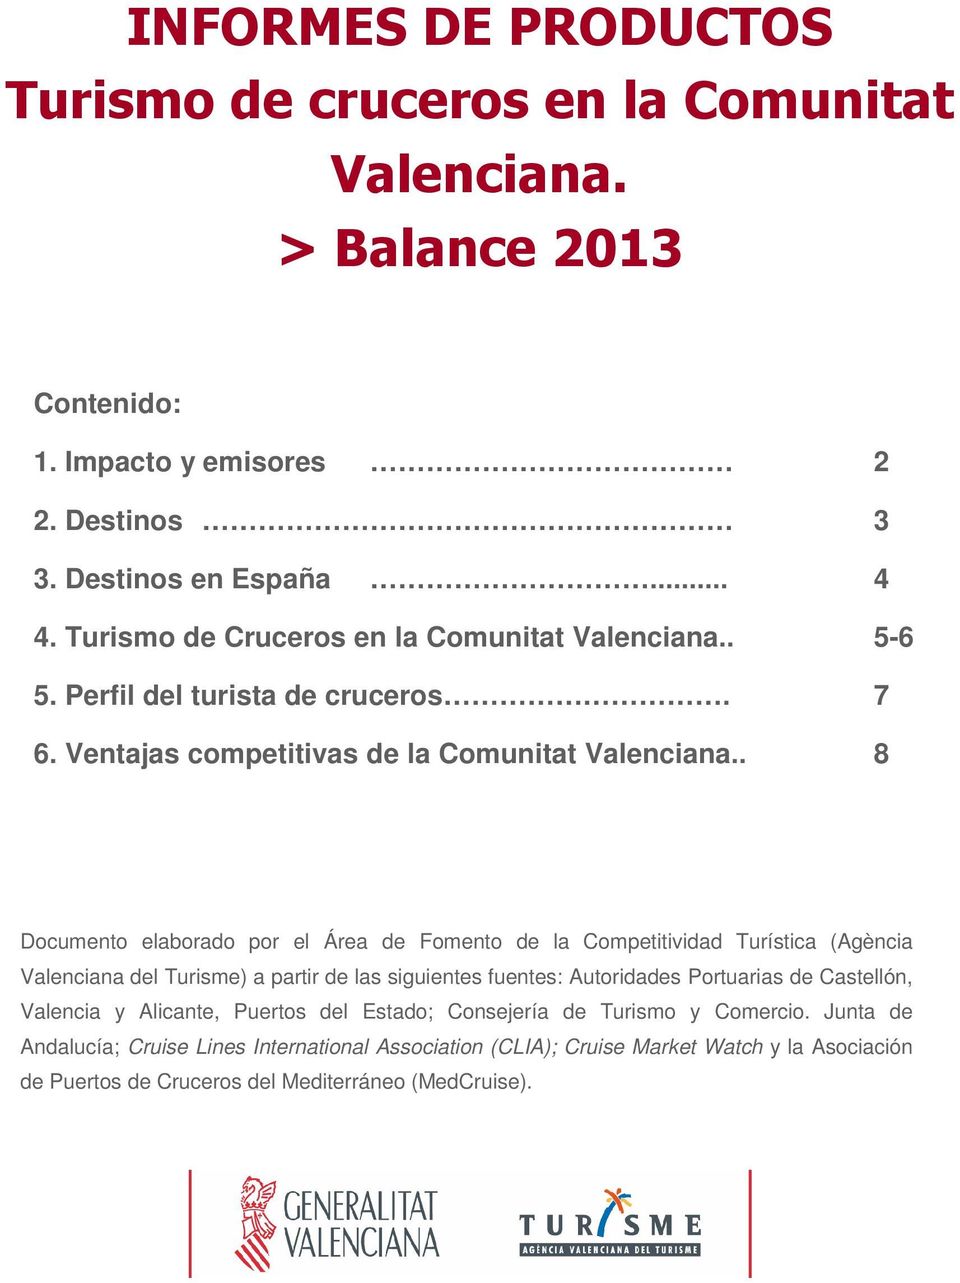 . Documento elaborado por el Área de Fomento de la Competitividad Turística (Agència Valenciana del Turisme) a partir de las siguientes fuentes: Autoridades Portuarias de Castellón, Valencia